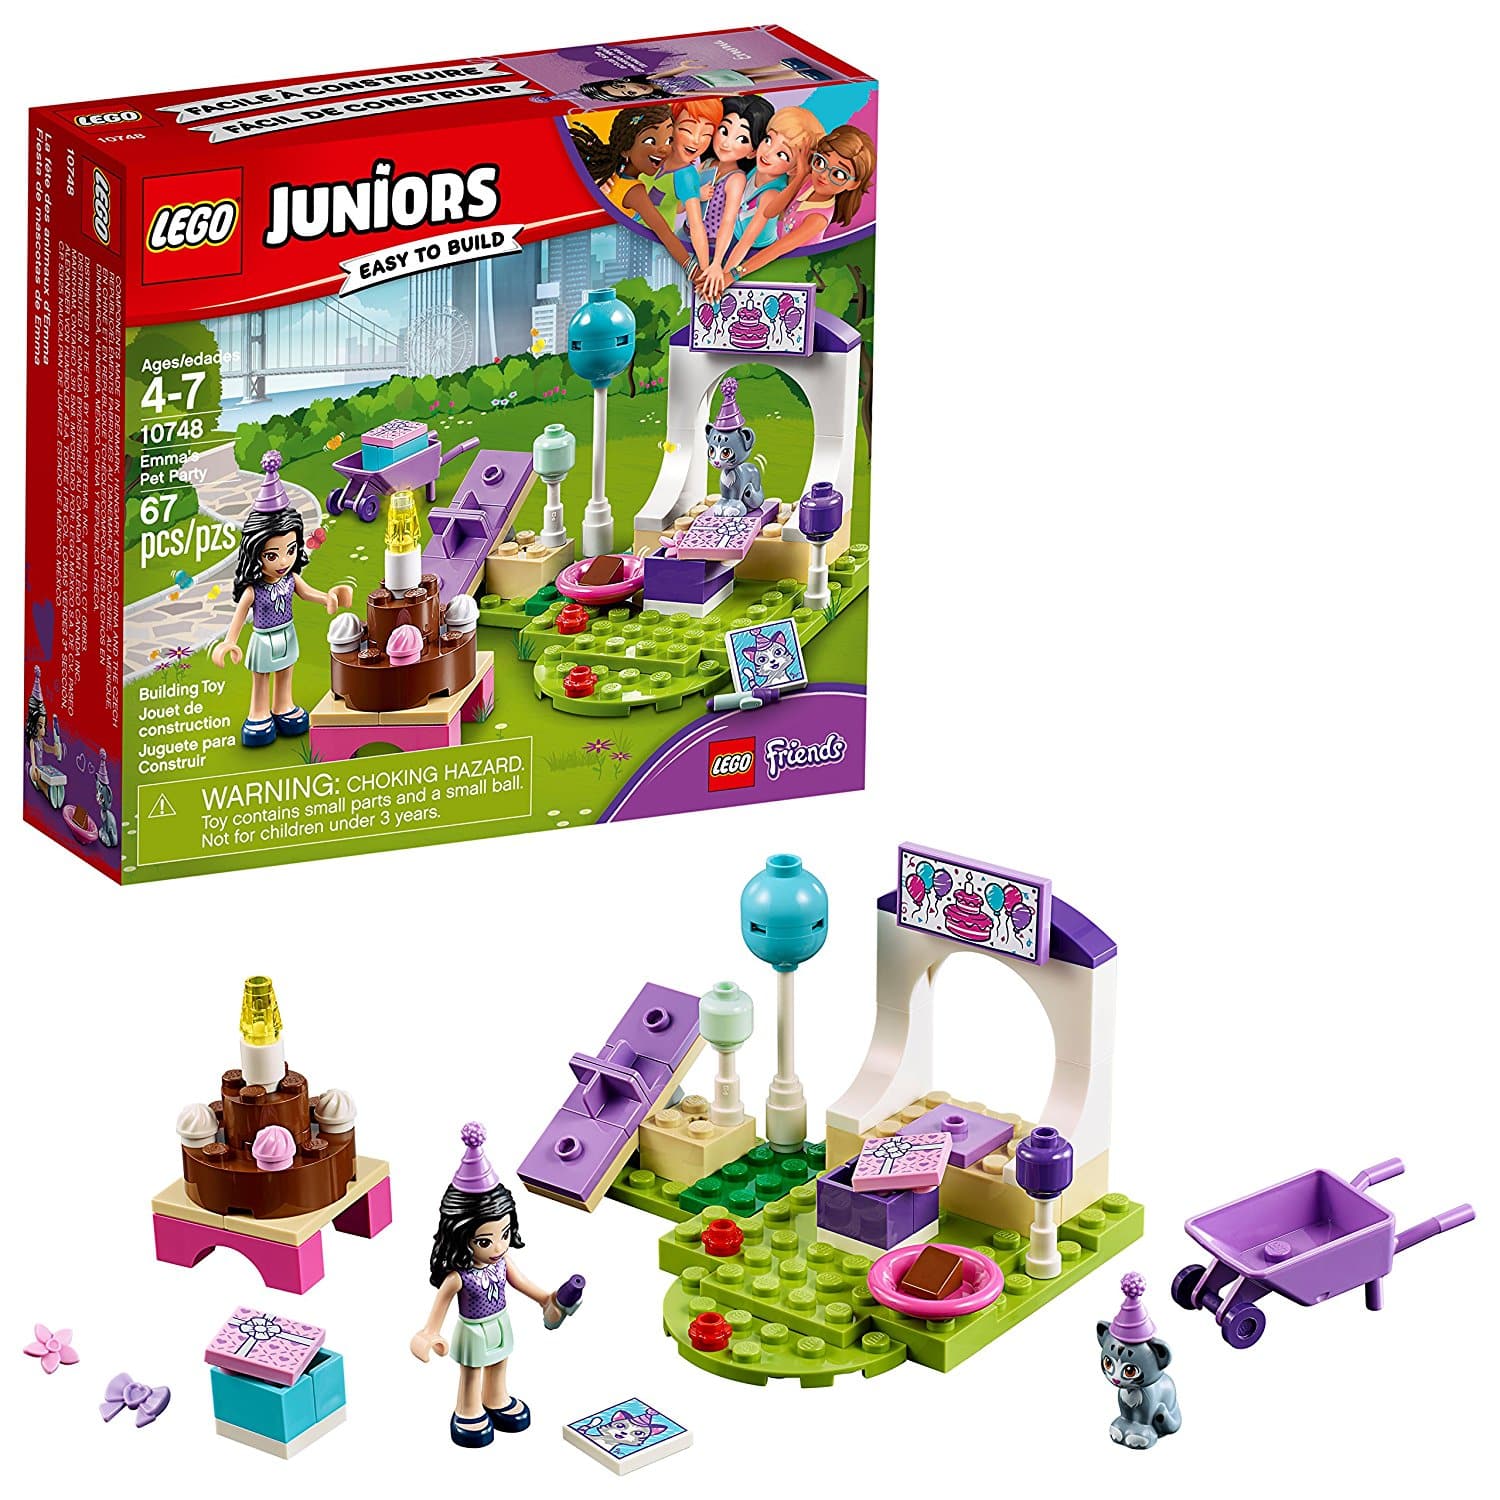 DEAL ALERT: LEGO Juniors  Emma’s Pet Party – 35% off!